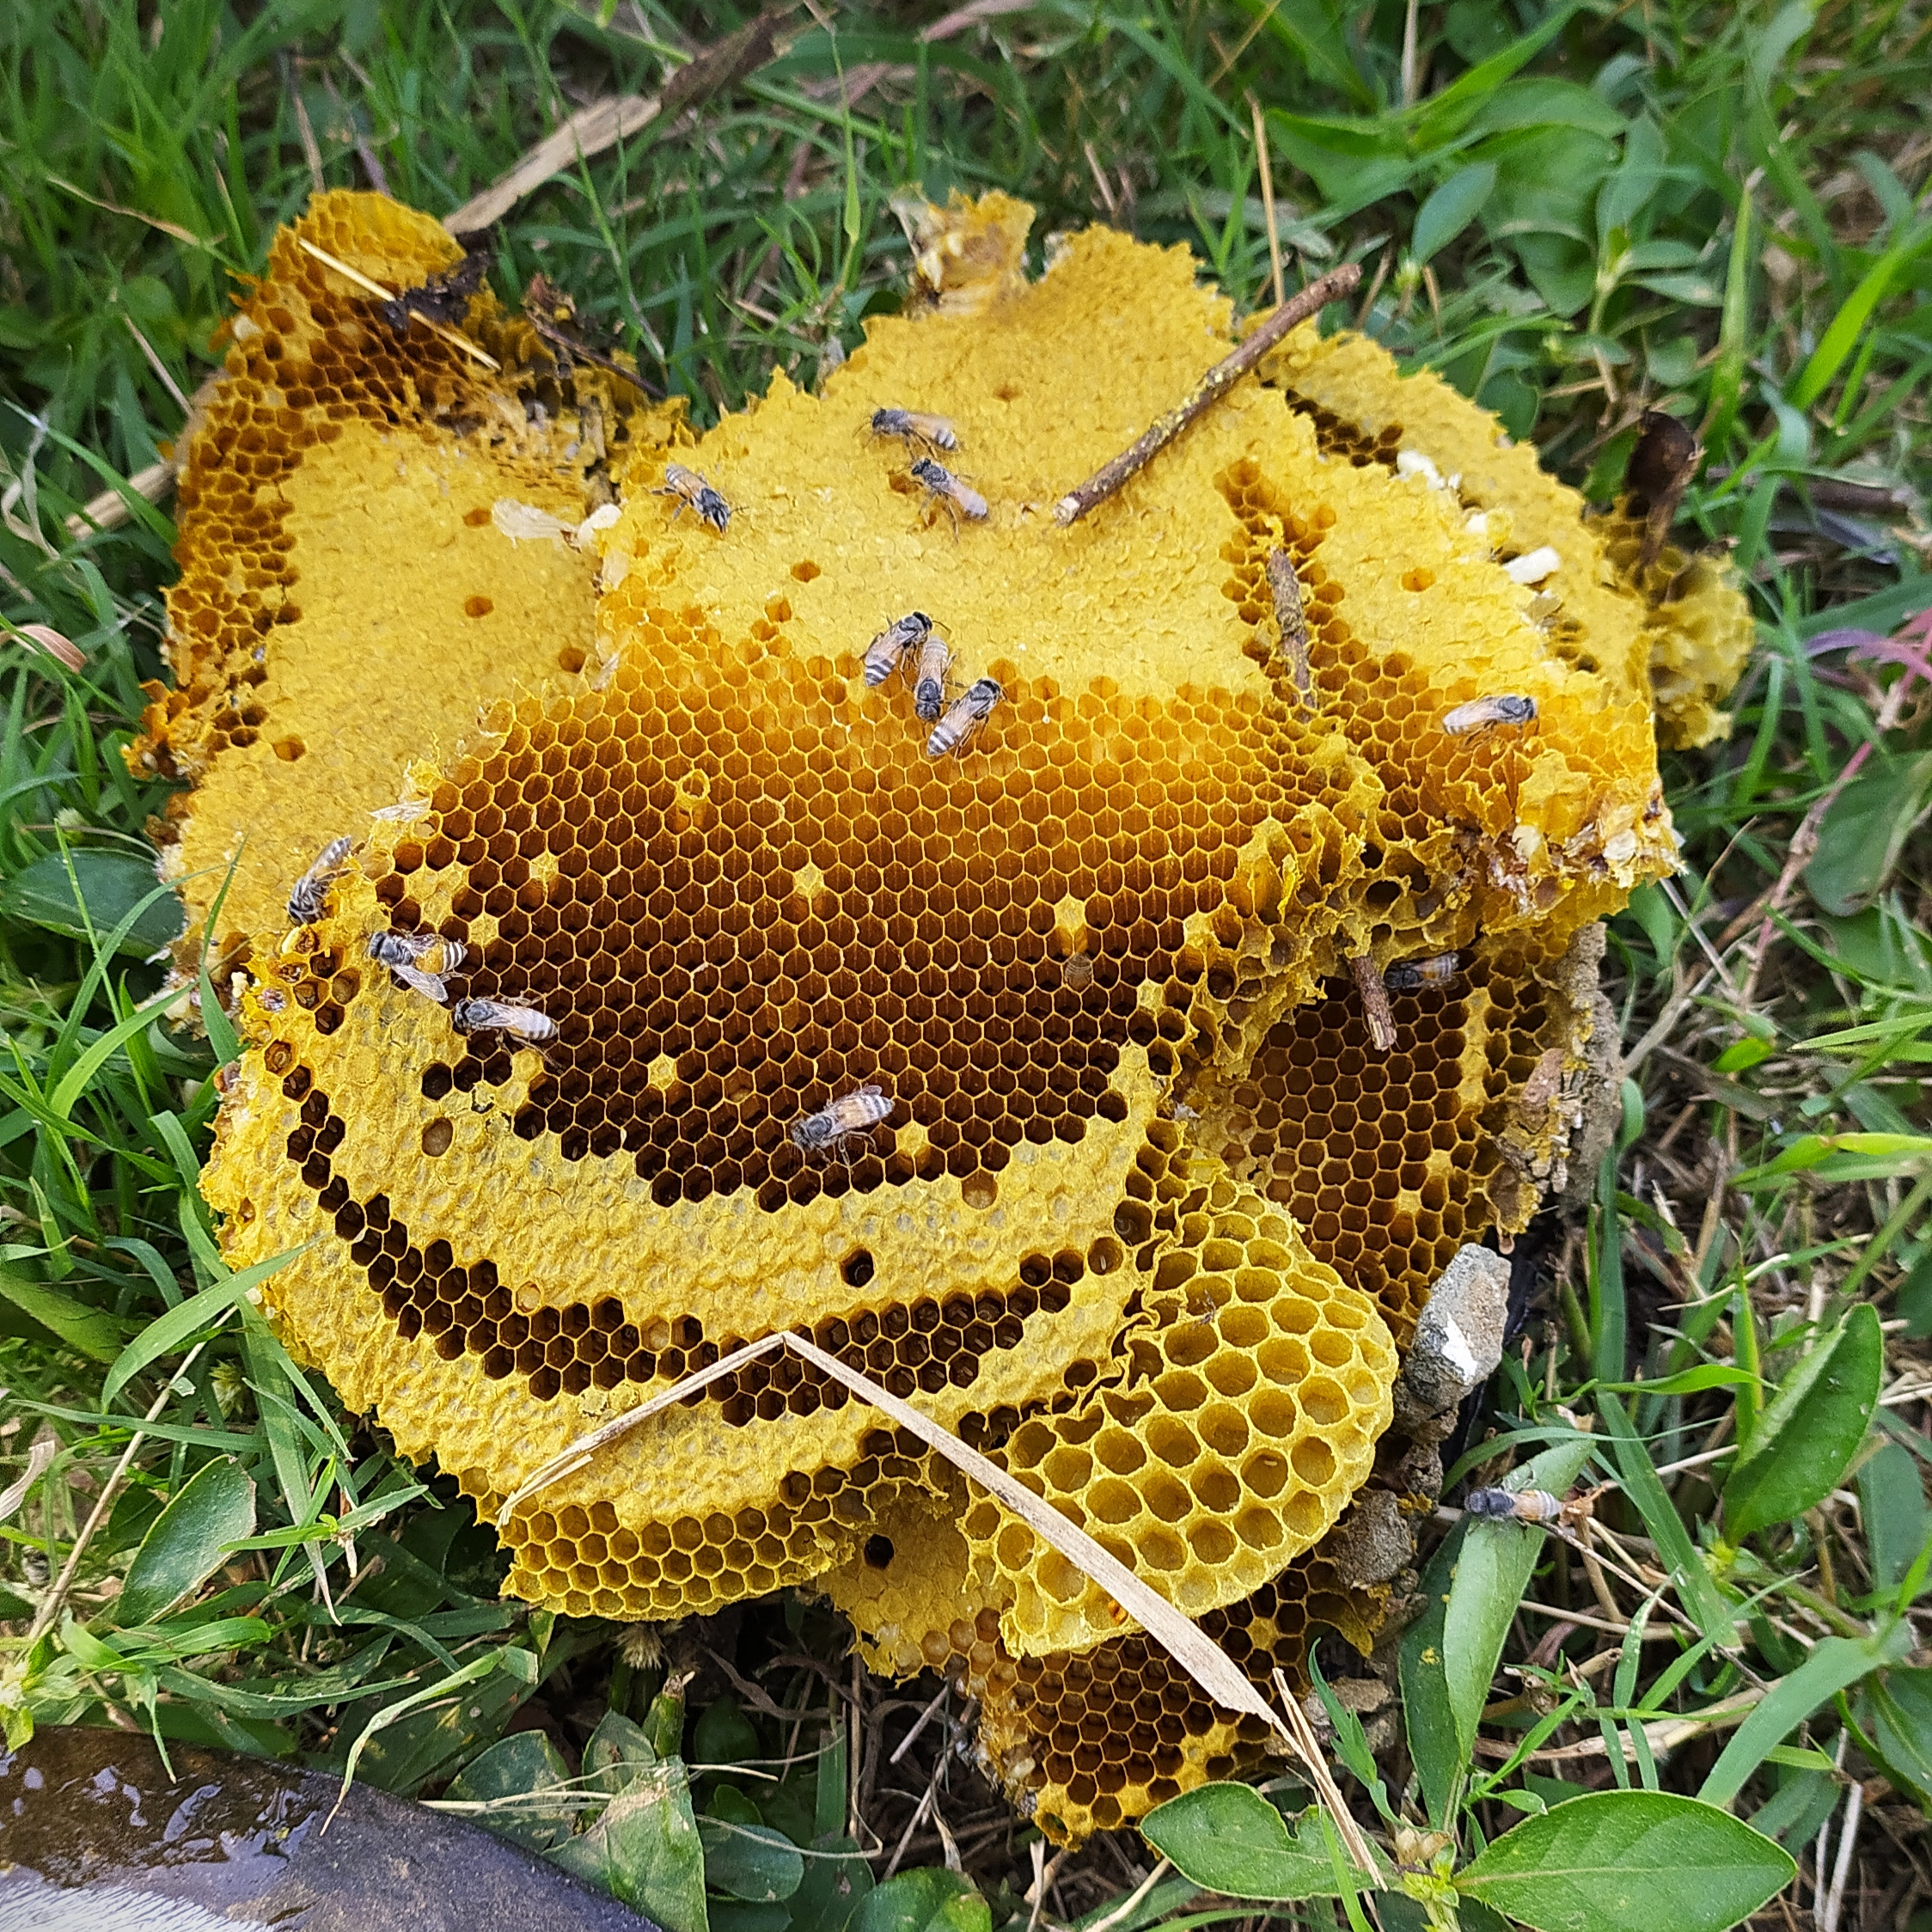 Beehive of hone bees